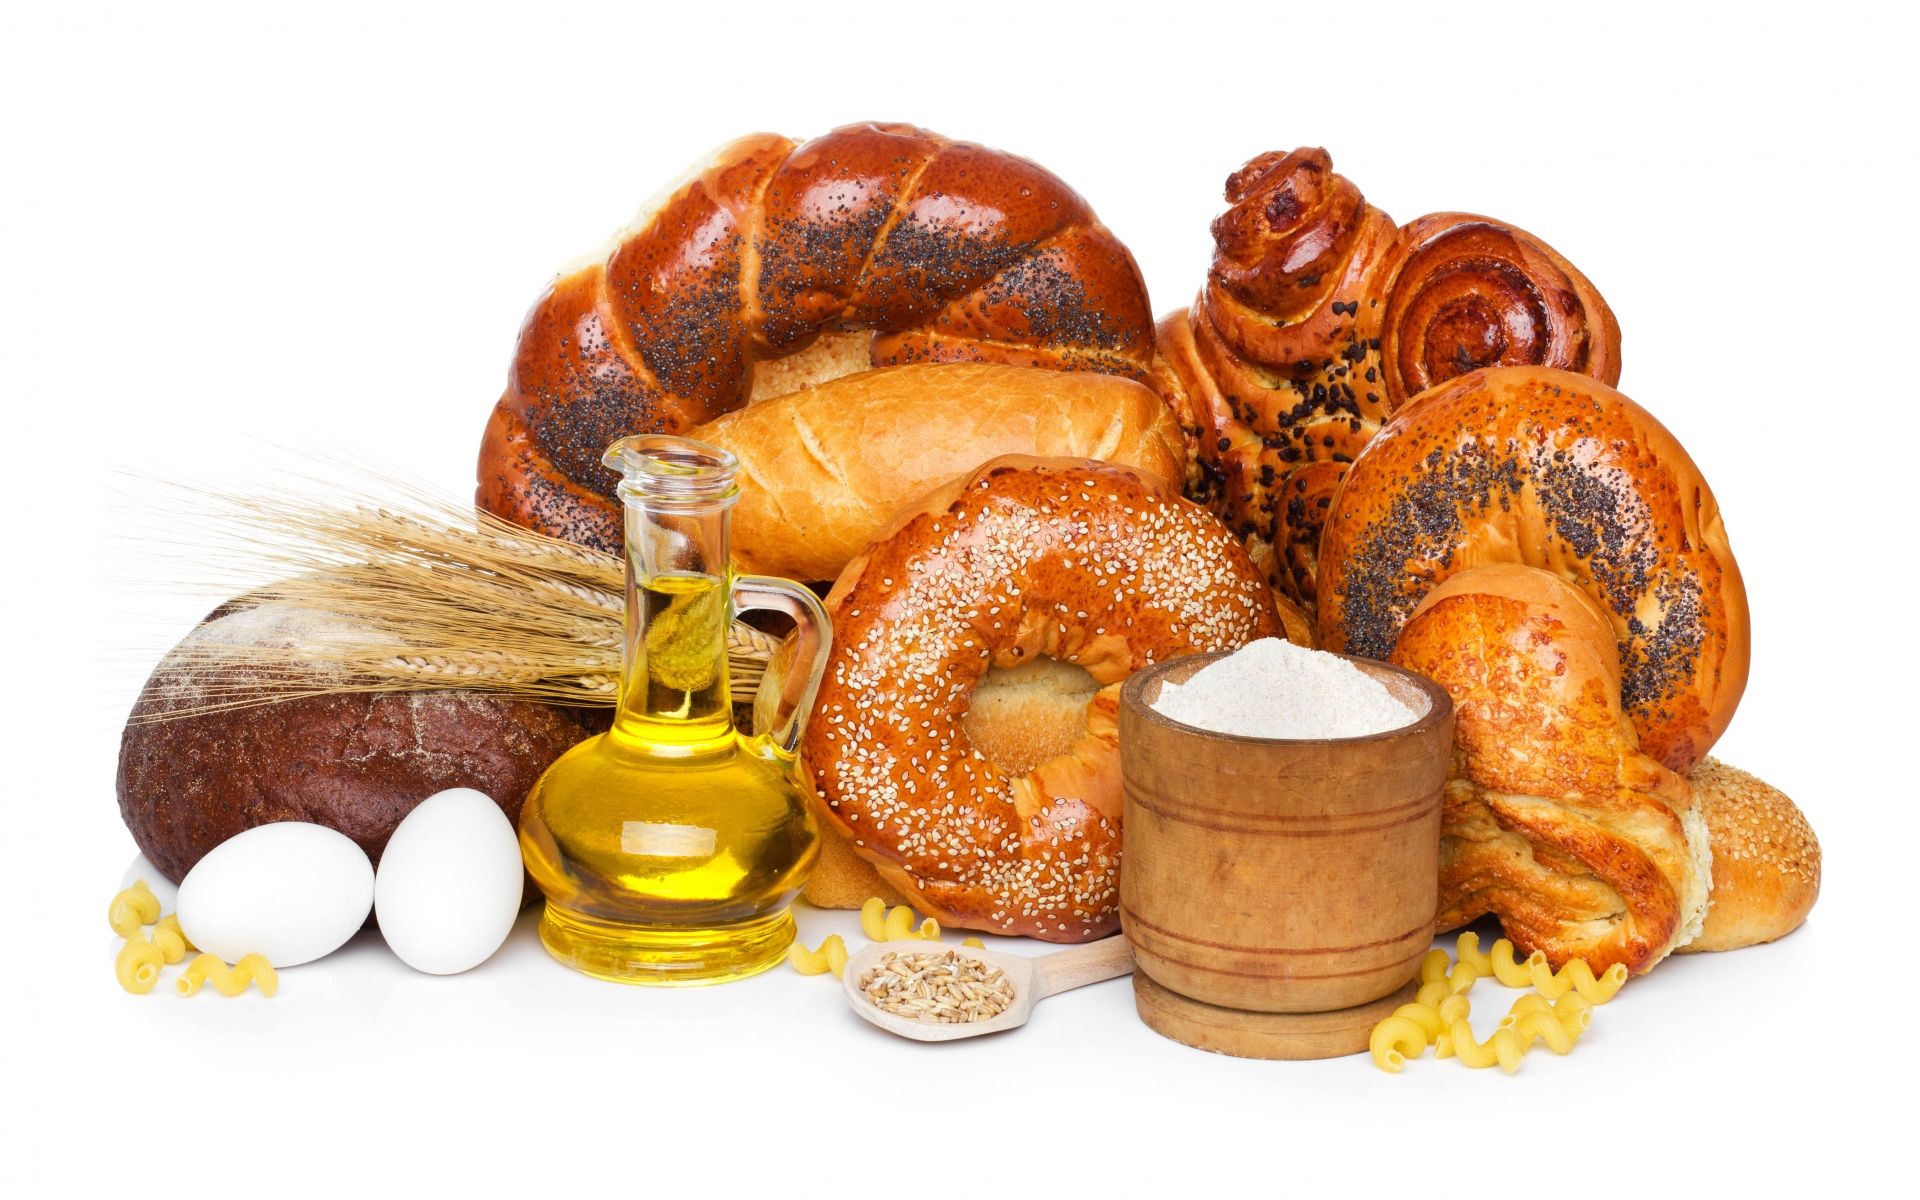 Картинки Хлеб, мак, семена, олива, масло, белый, яйца, кукуруза, мука, макароны фото и обои на рабочий стол